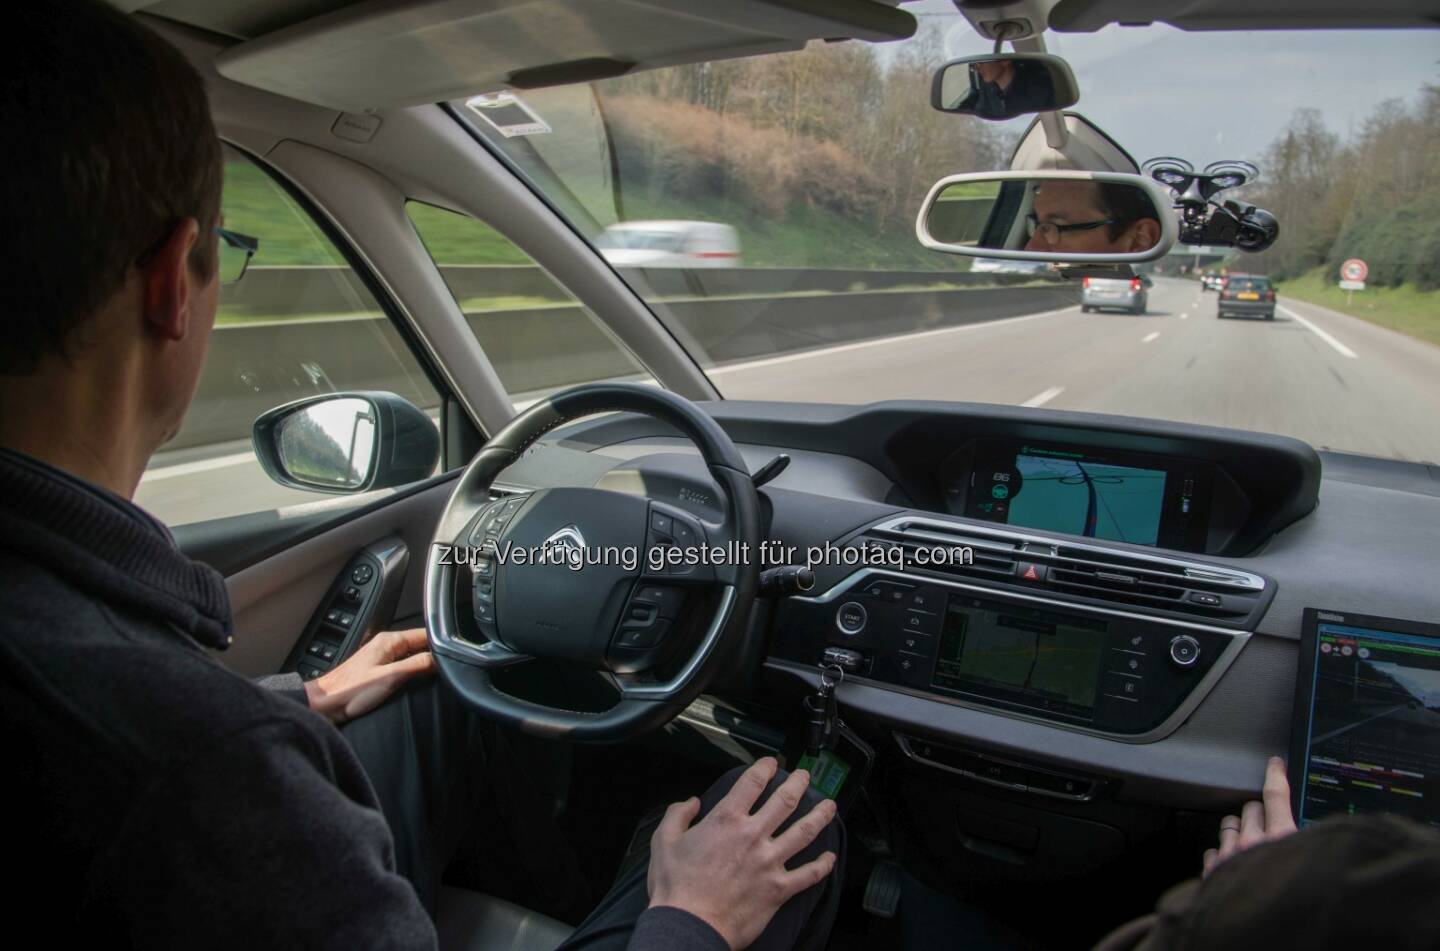 Fahren im Eyes-off-Modus : Im Eyes-off Modus - hochautomatisiert – fahren zwei autonome Fahrzeuge der Groupe PSA von Paris nach Amsterdam : Fotocredit: Groupe PSA